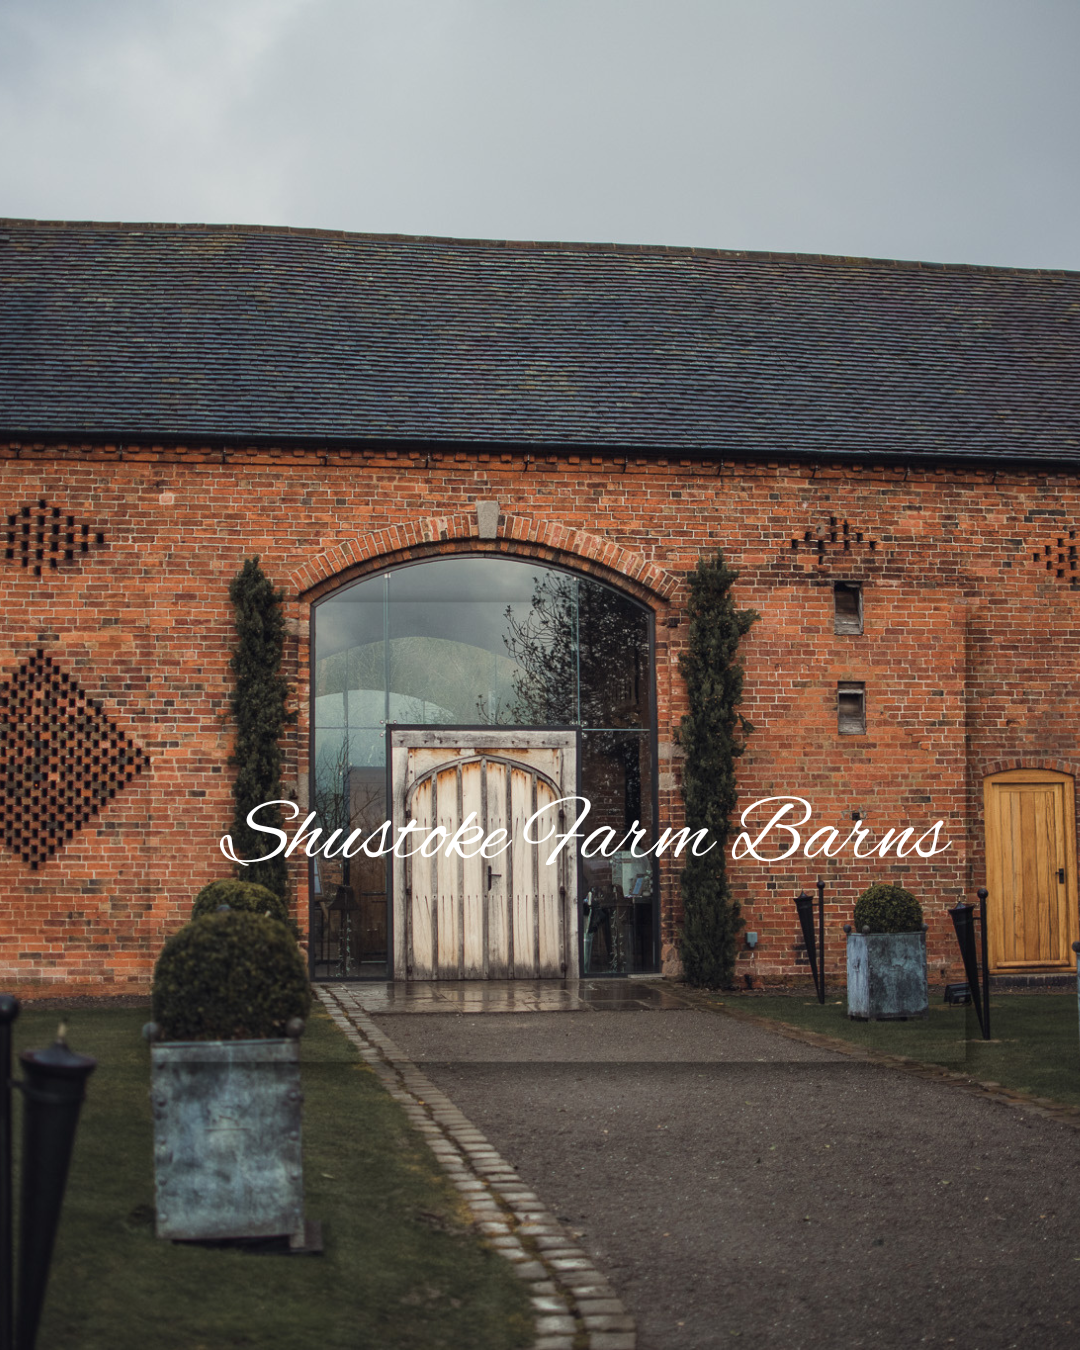 Shustoke-Farm-Barns-Shropshire-Wedding-Venue.png